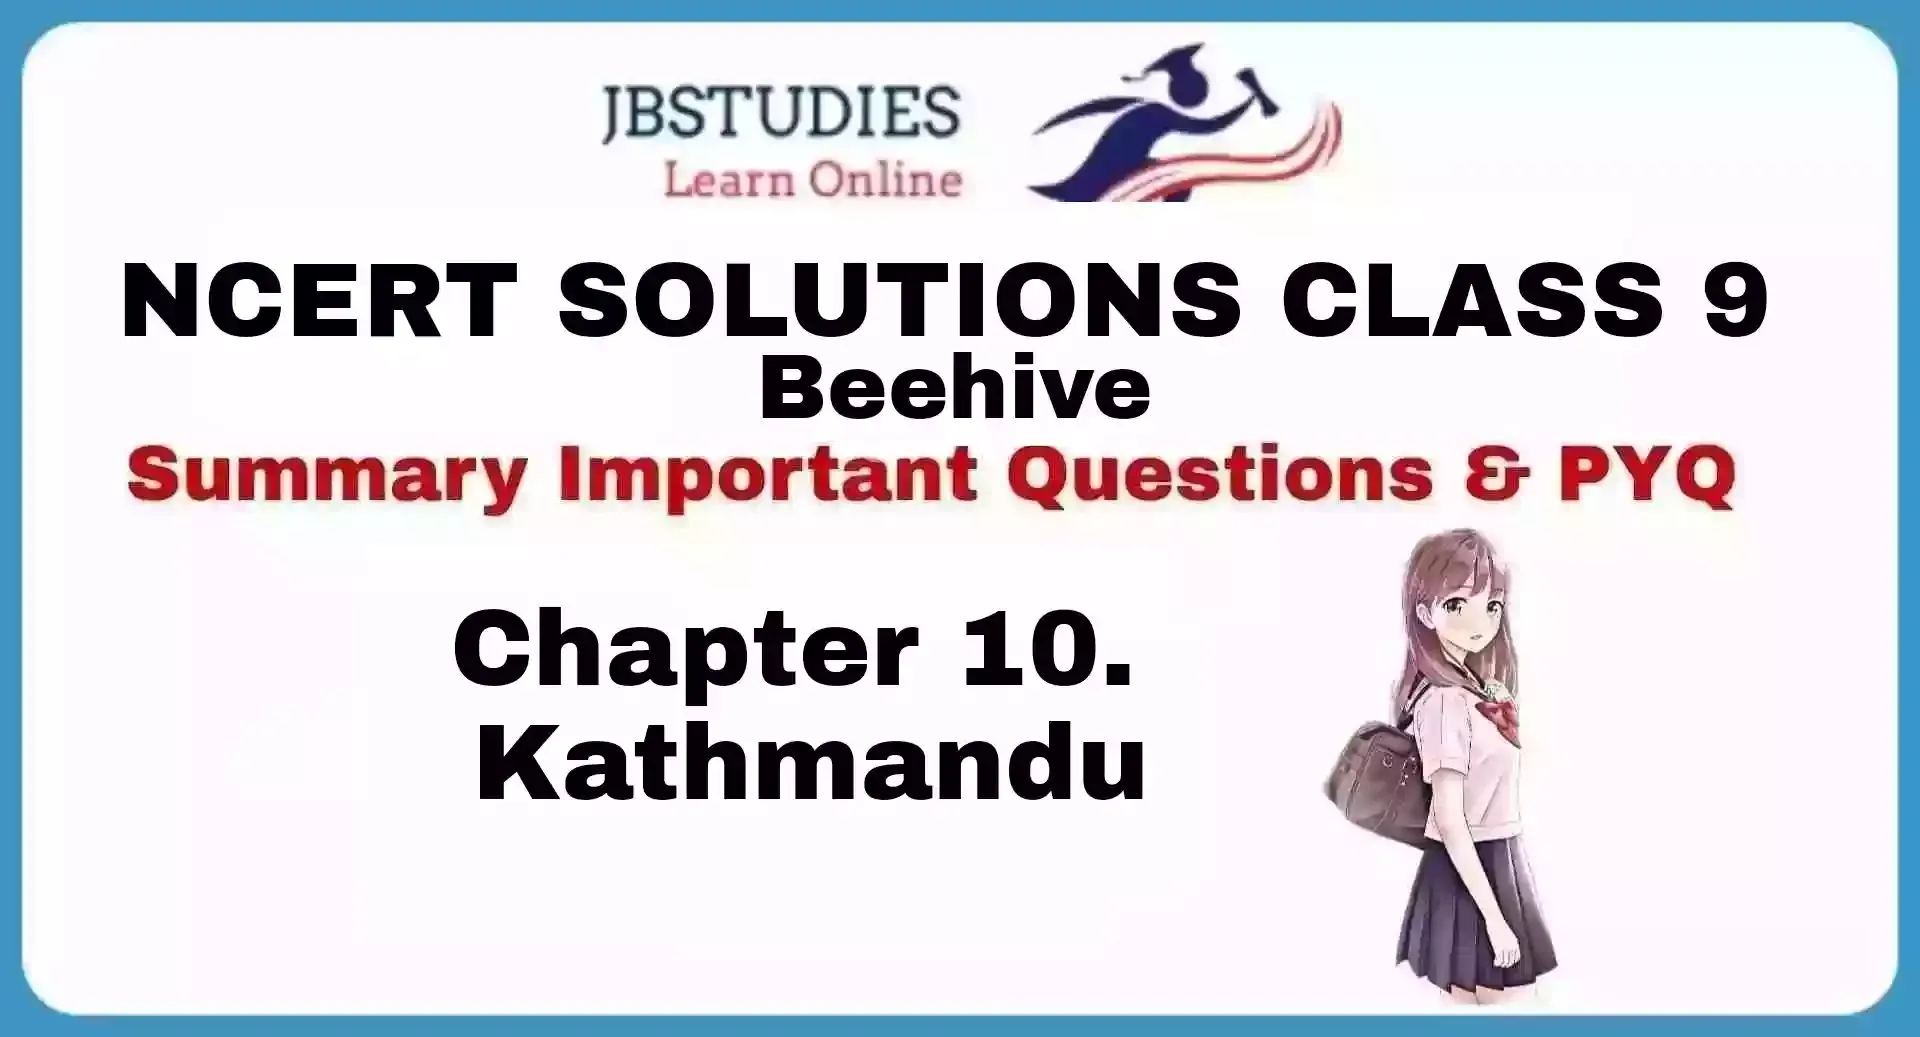 Solutions Class 9 Beehive Chapter-10 (Kathmandu)